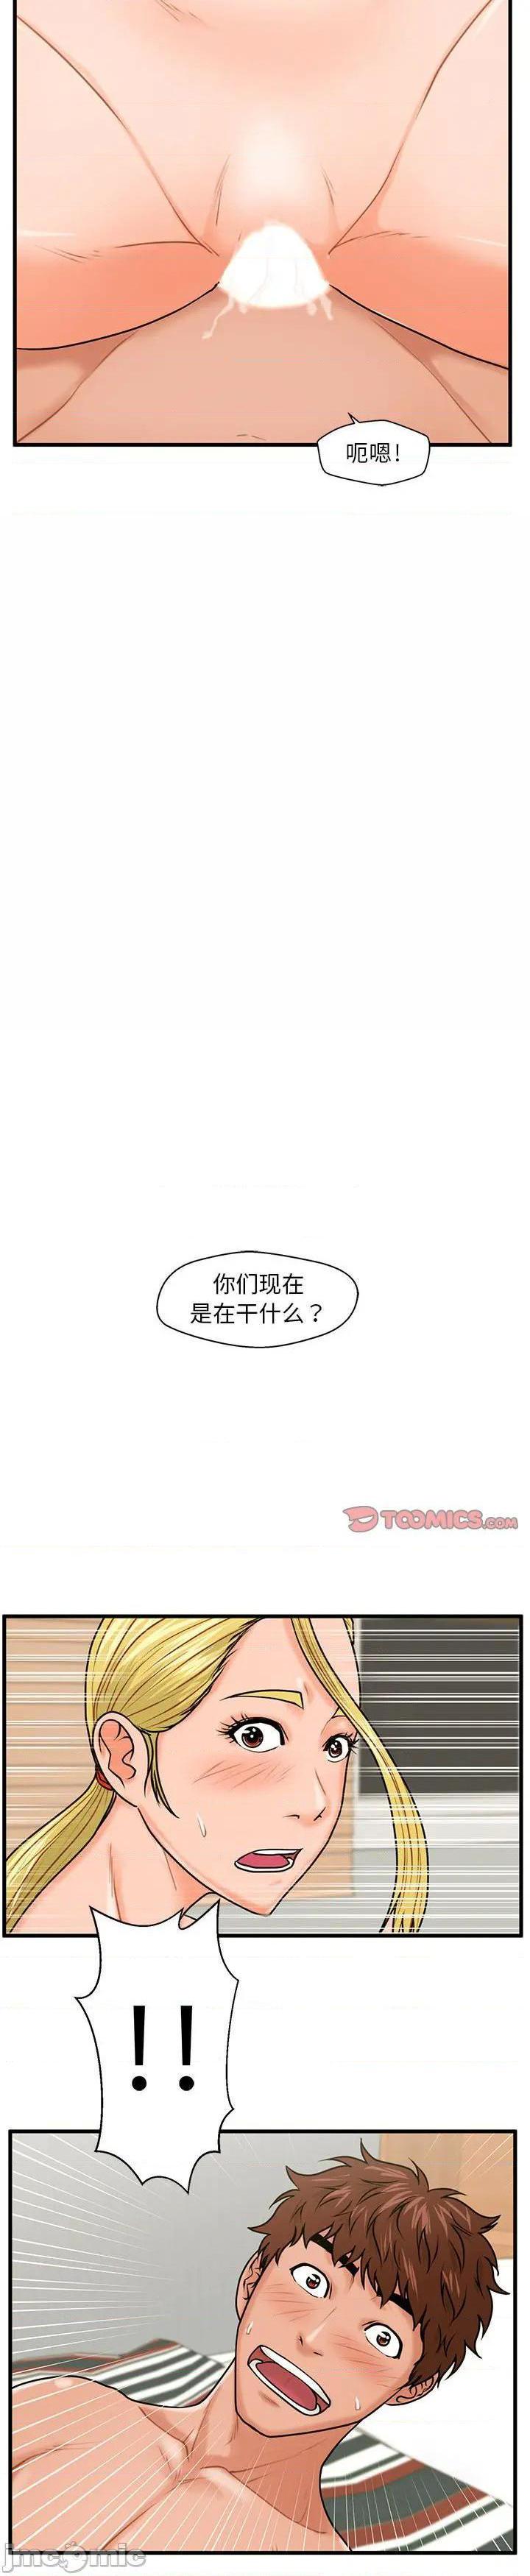 《诚徵女房客(甜蜜合租)》漫画 第20话